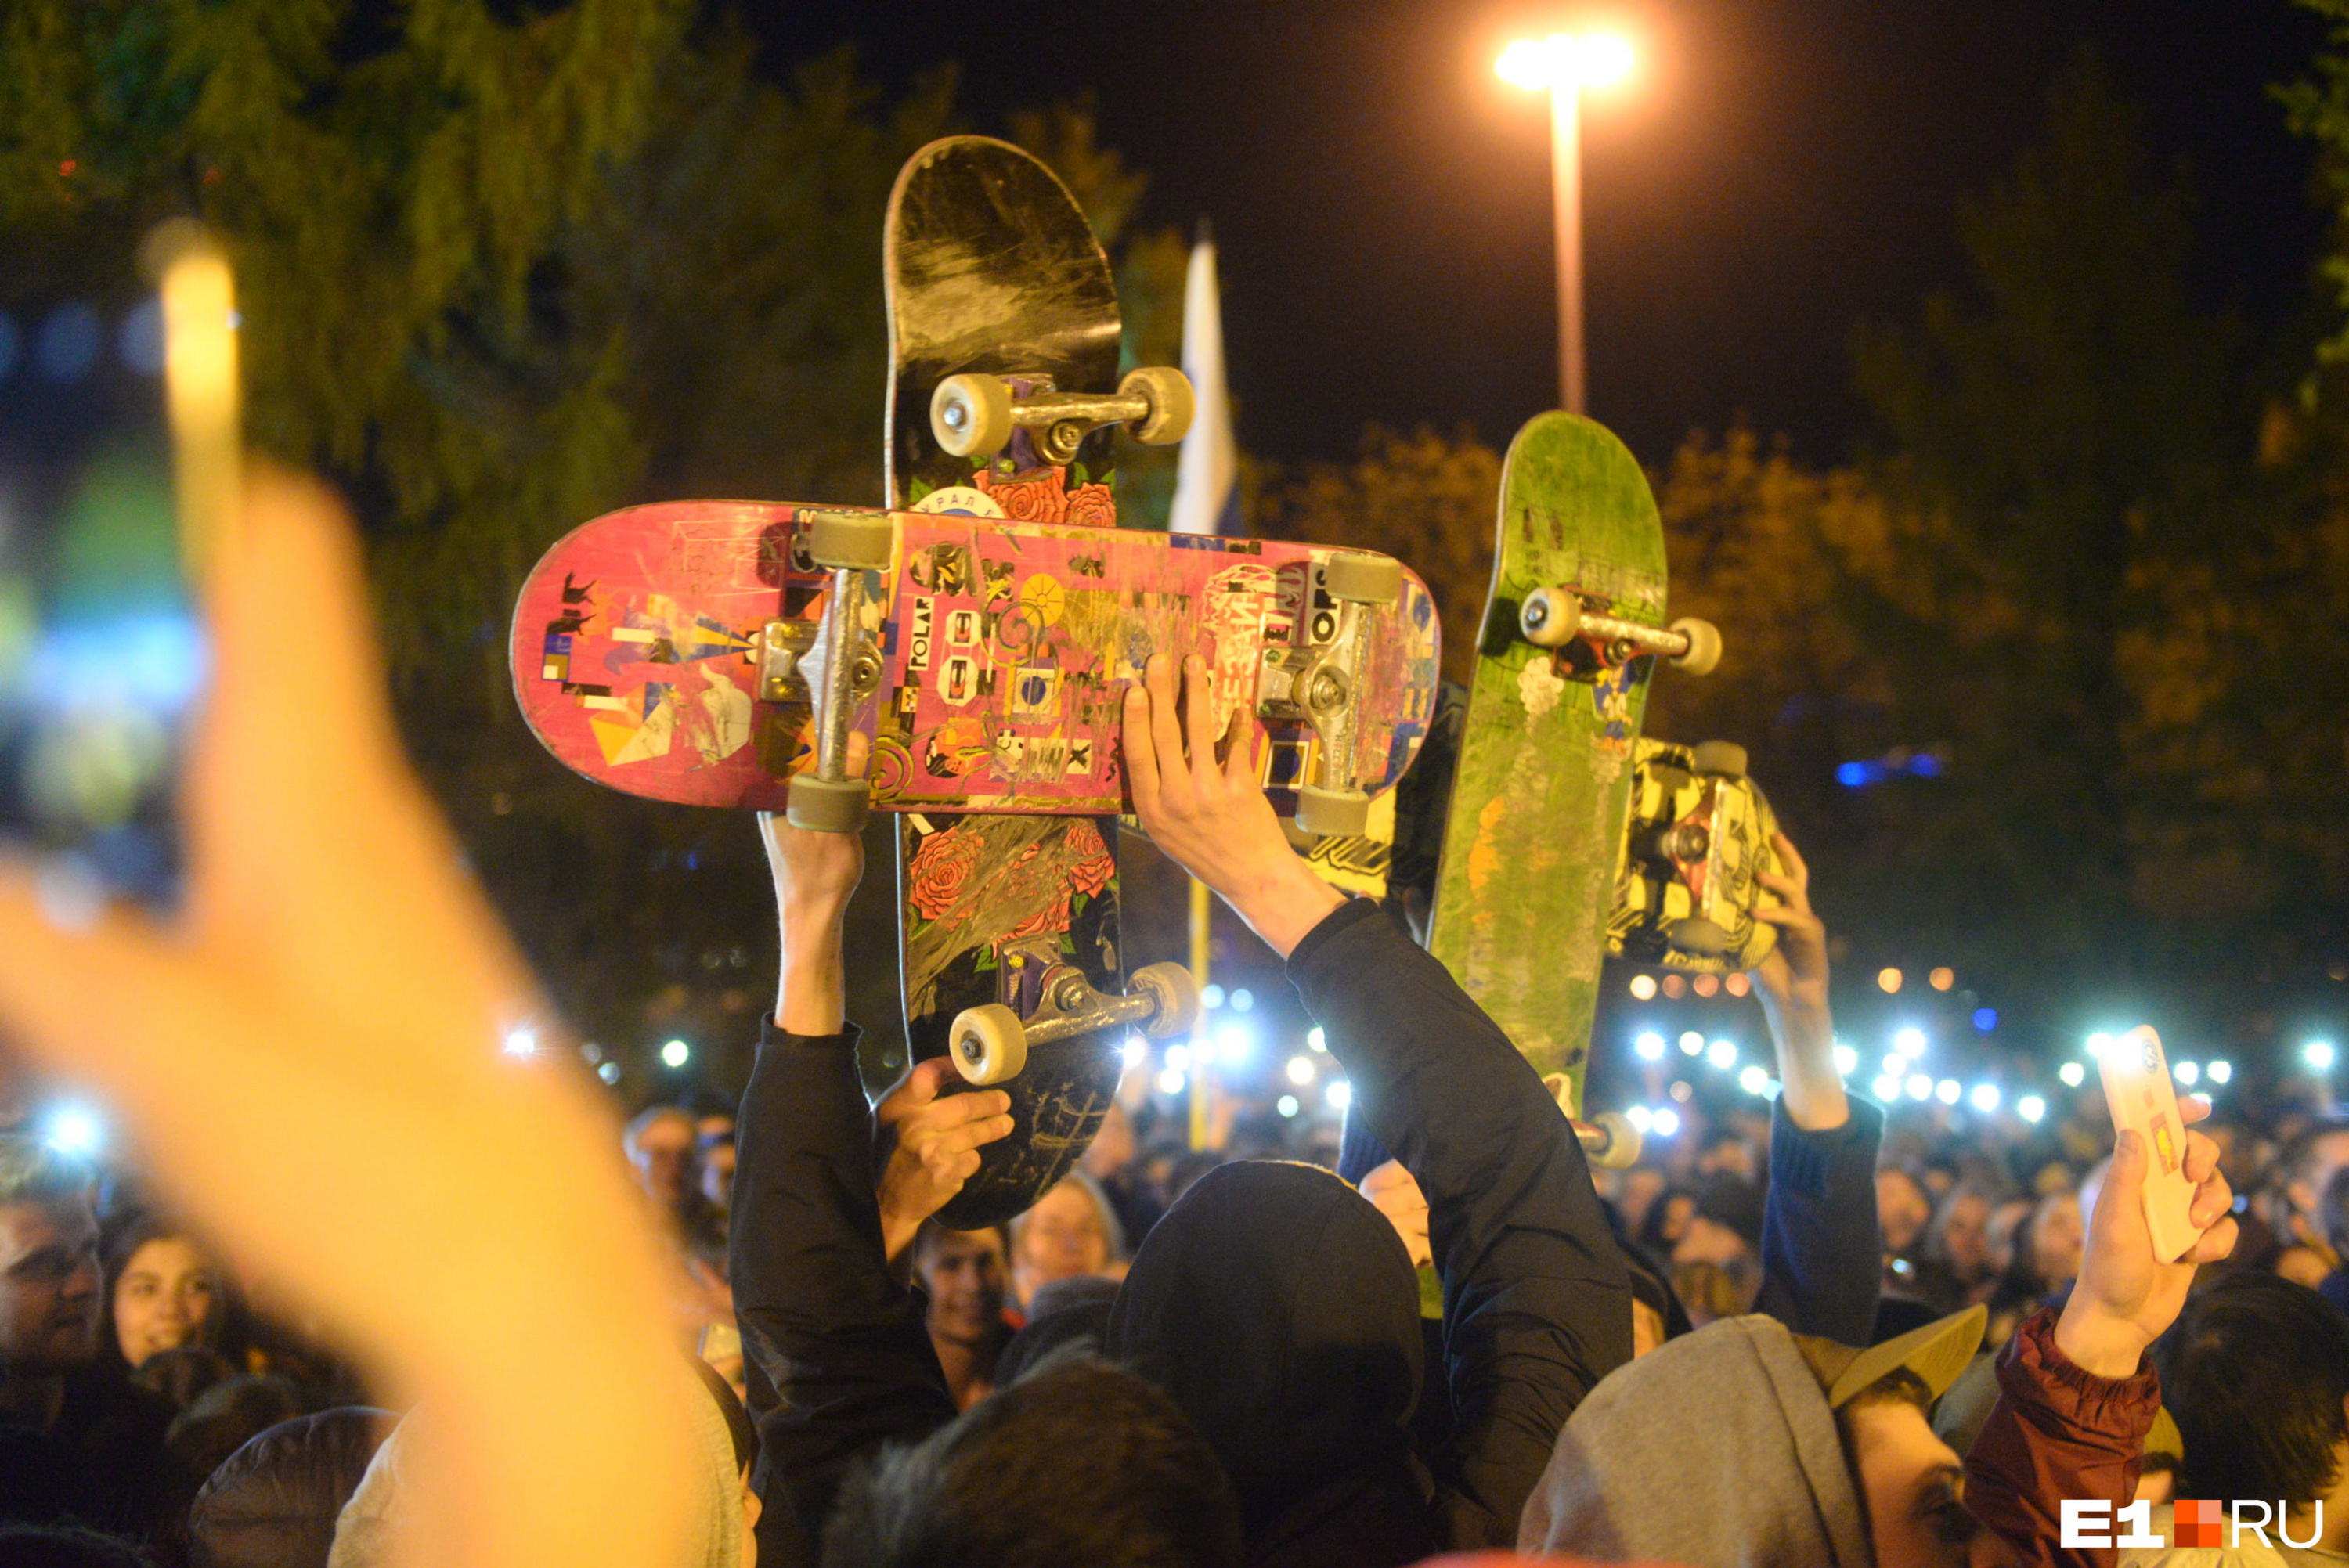 Среди участников акции протеста были молодые люди, которые решили выразить свое отношение к идее строительства храма в сквере с помощью скрещенных скейтов